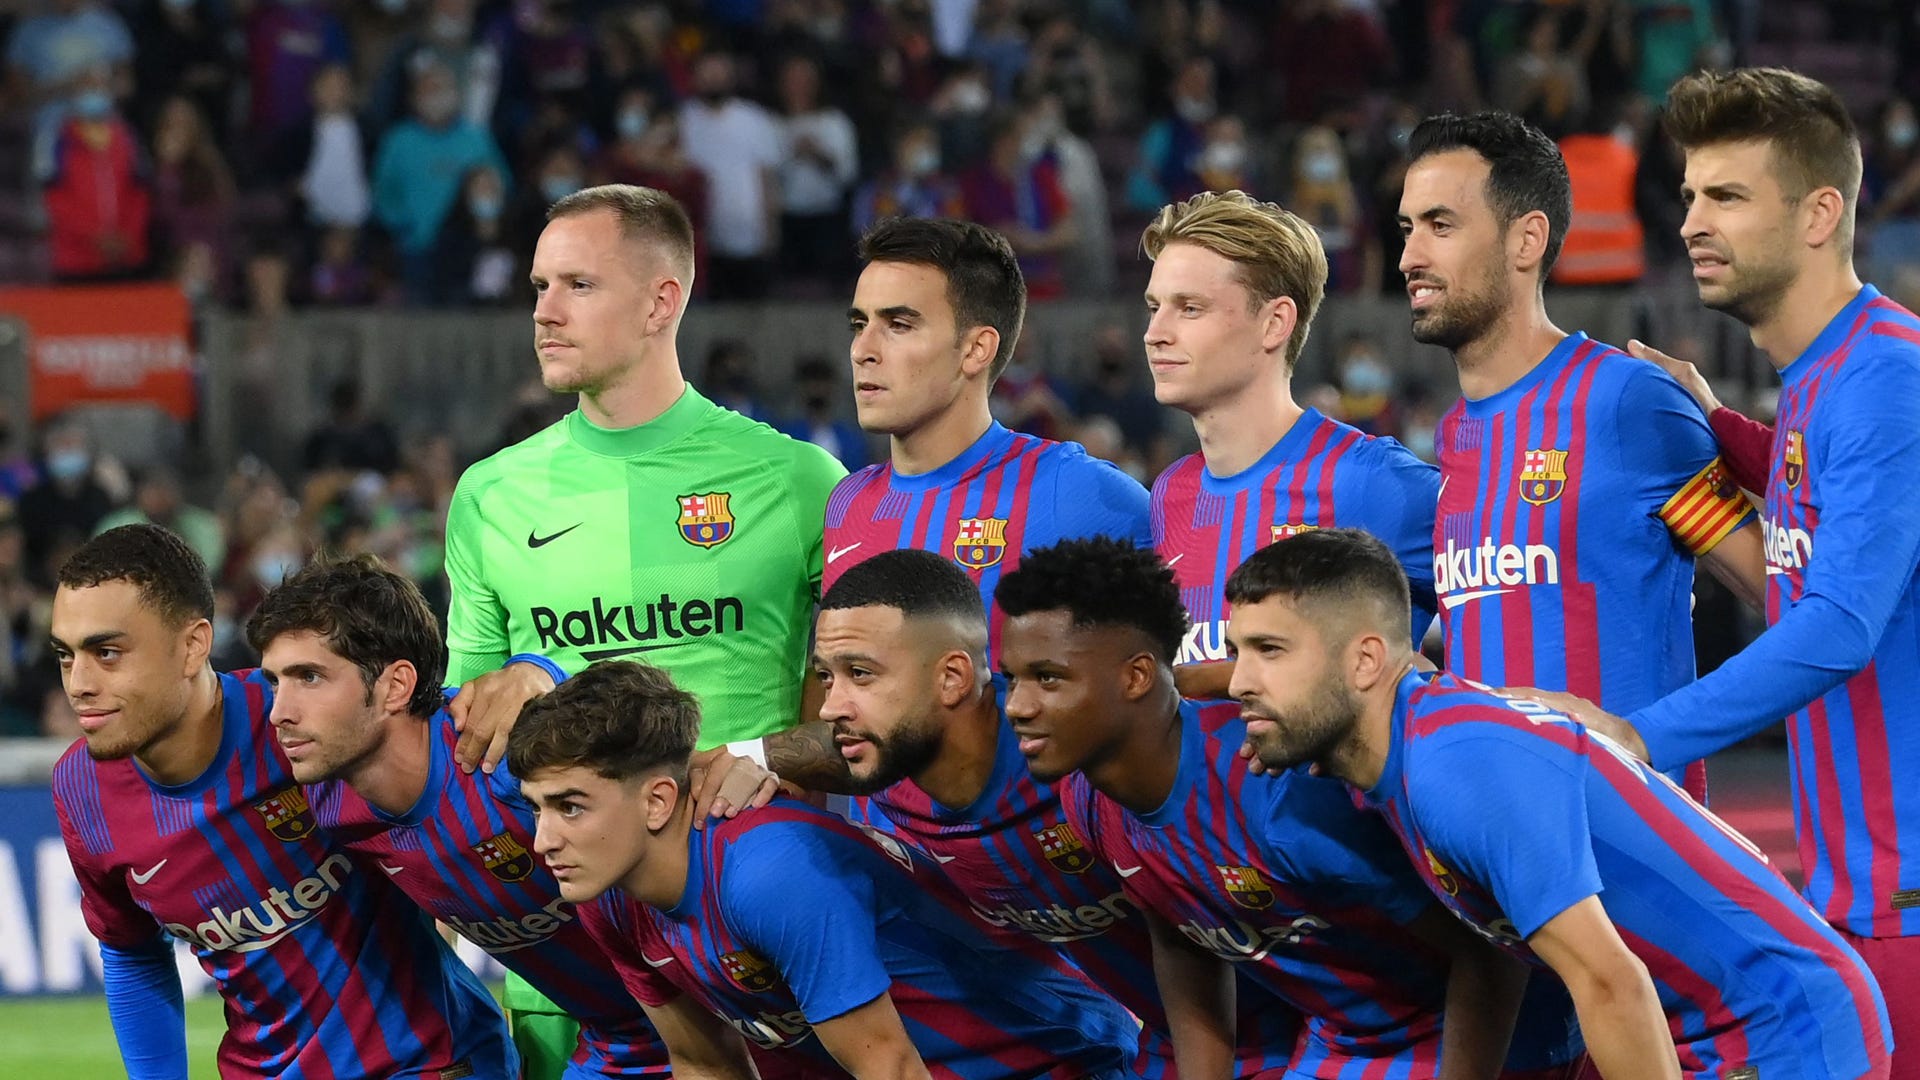 Fue el Barcelona alguna vez eliminado en fase grupos de la League? ocurrió y precedentes | Goal.com Espana